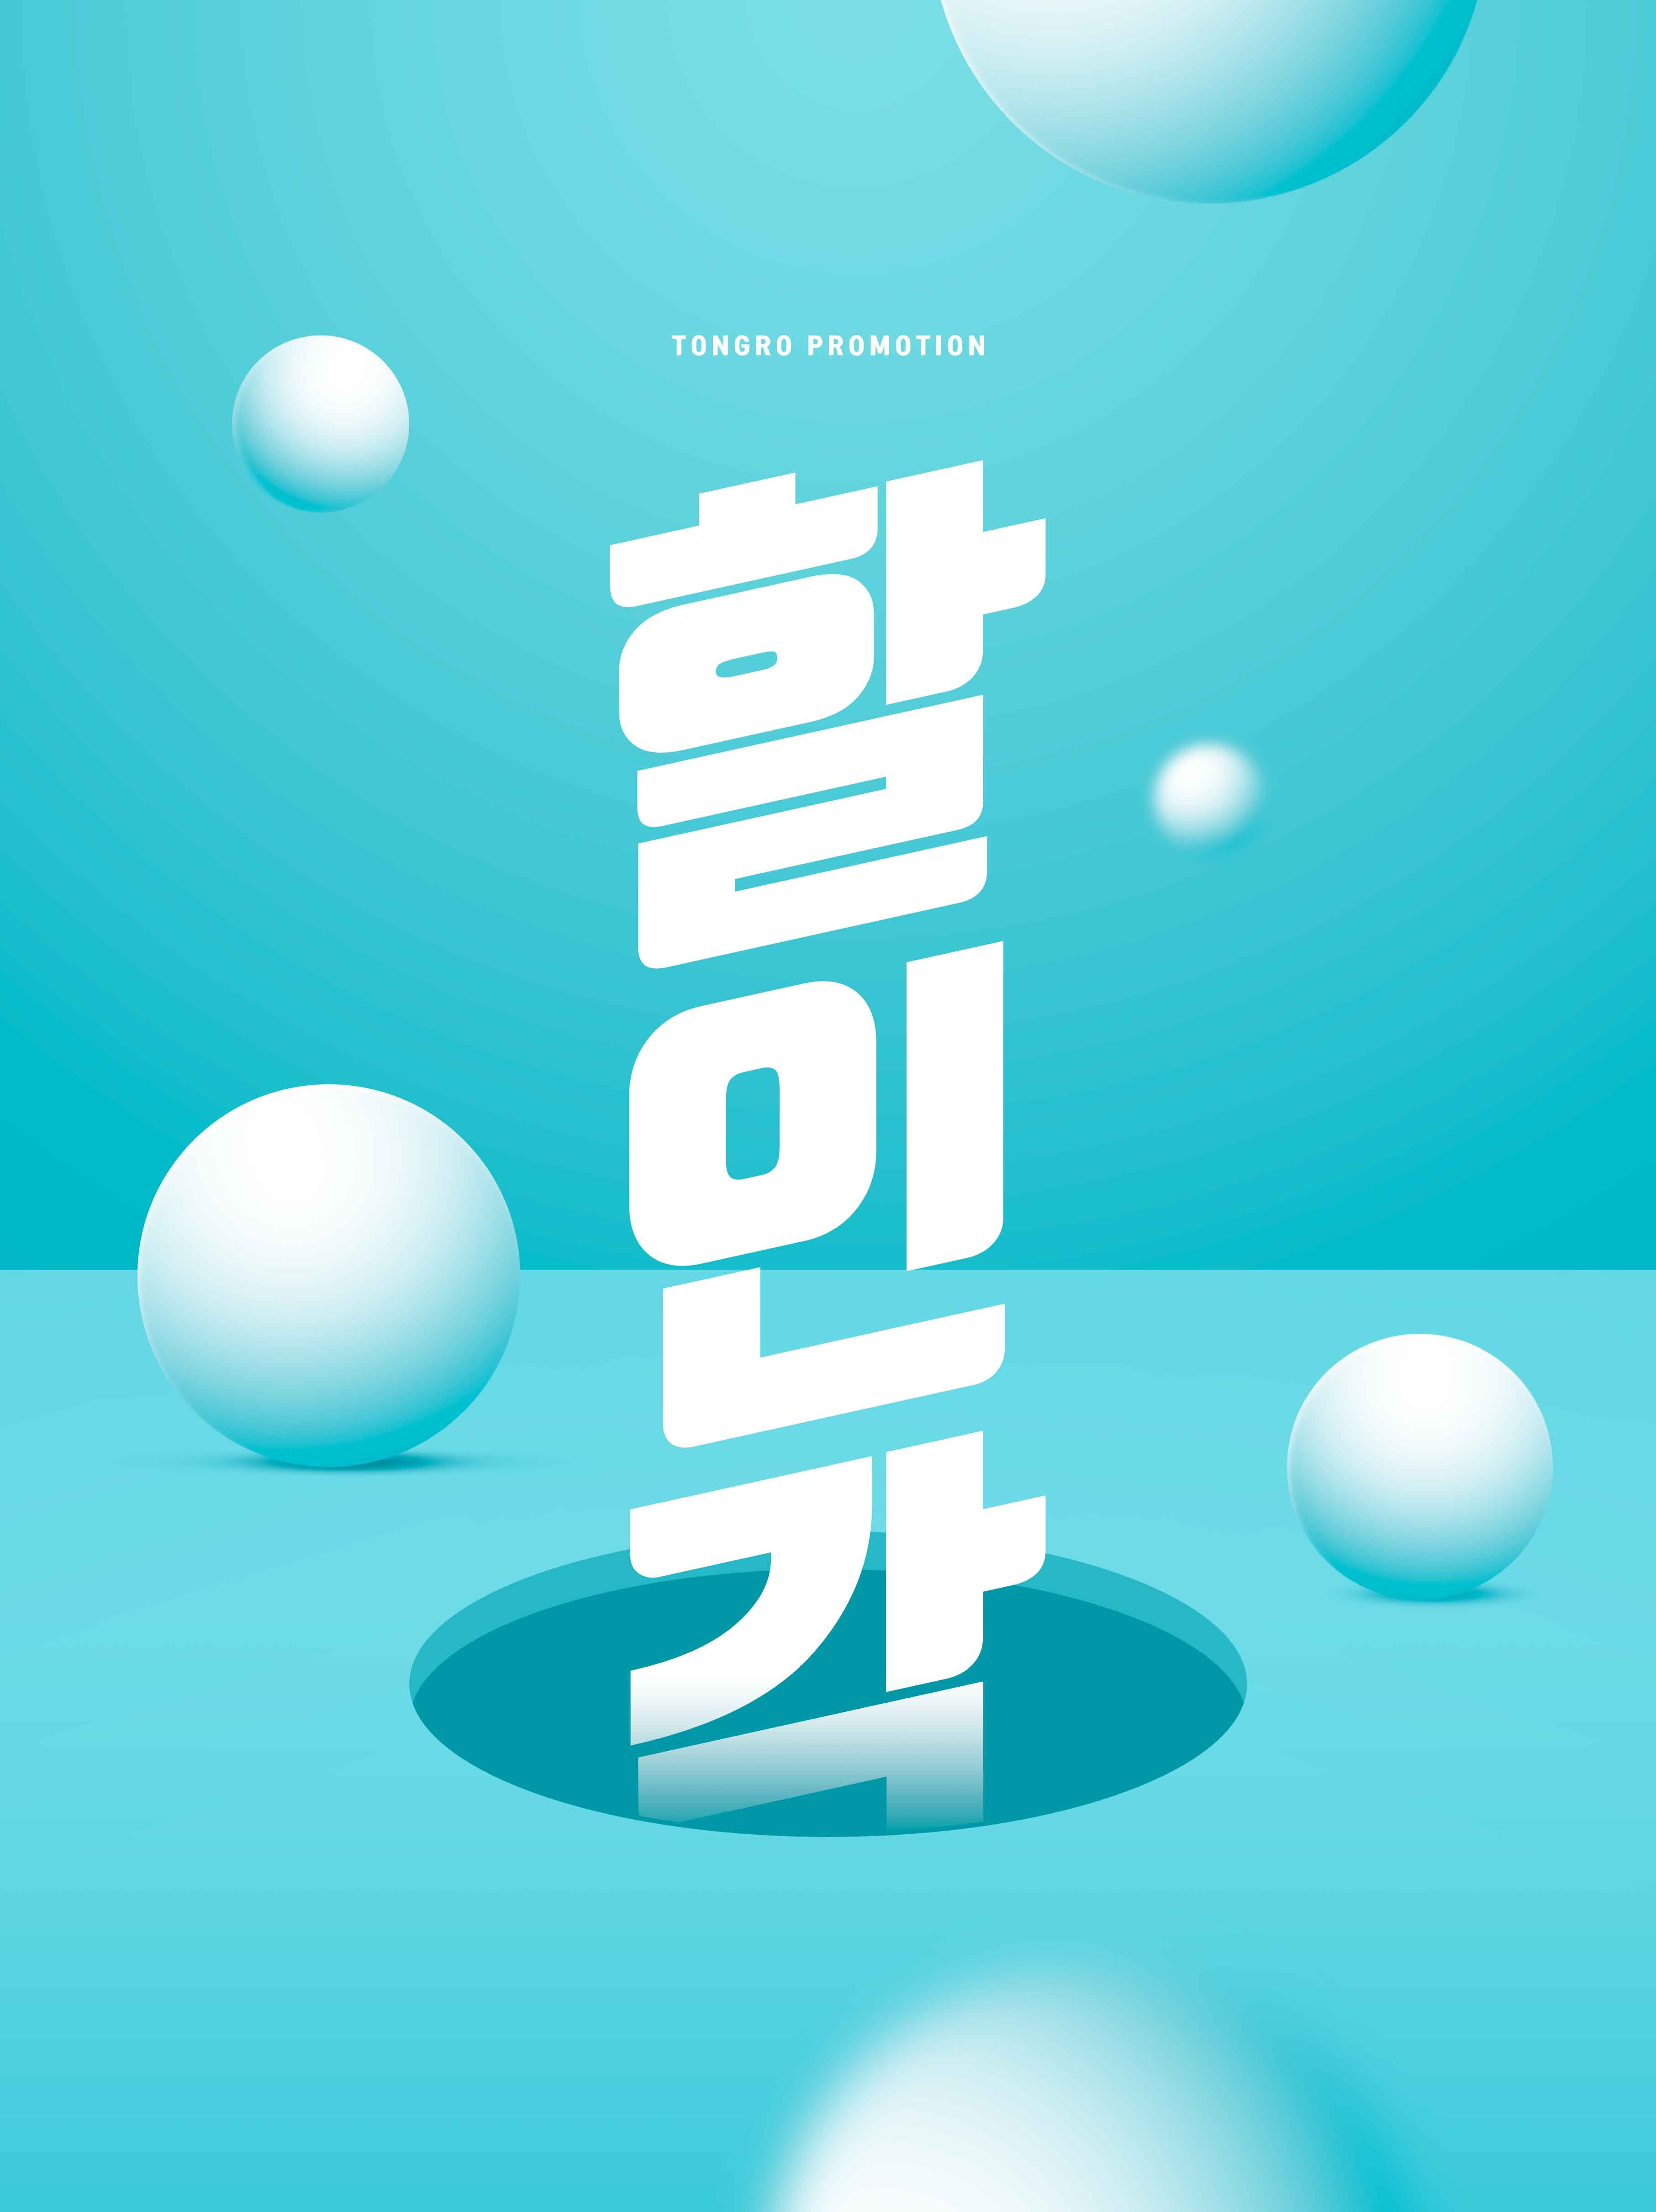 创意几何元素促销海报PSD素材蚂蚁素材精选韩国素材合集插图